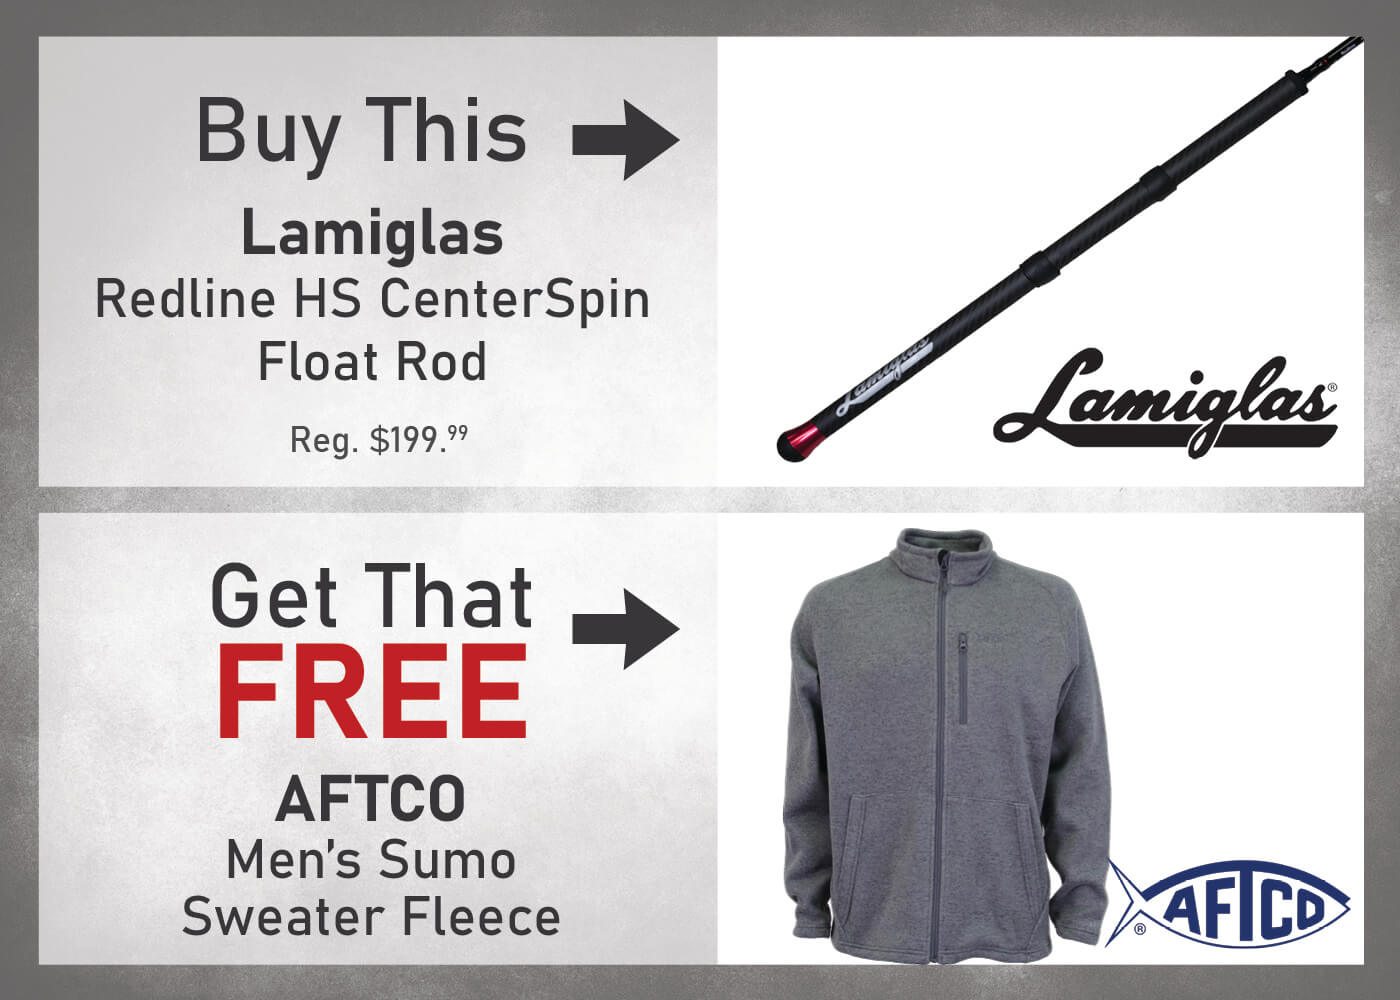 Buy a Lamiglas Redline HS CenterSpin Float Rod & Get a FREE 